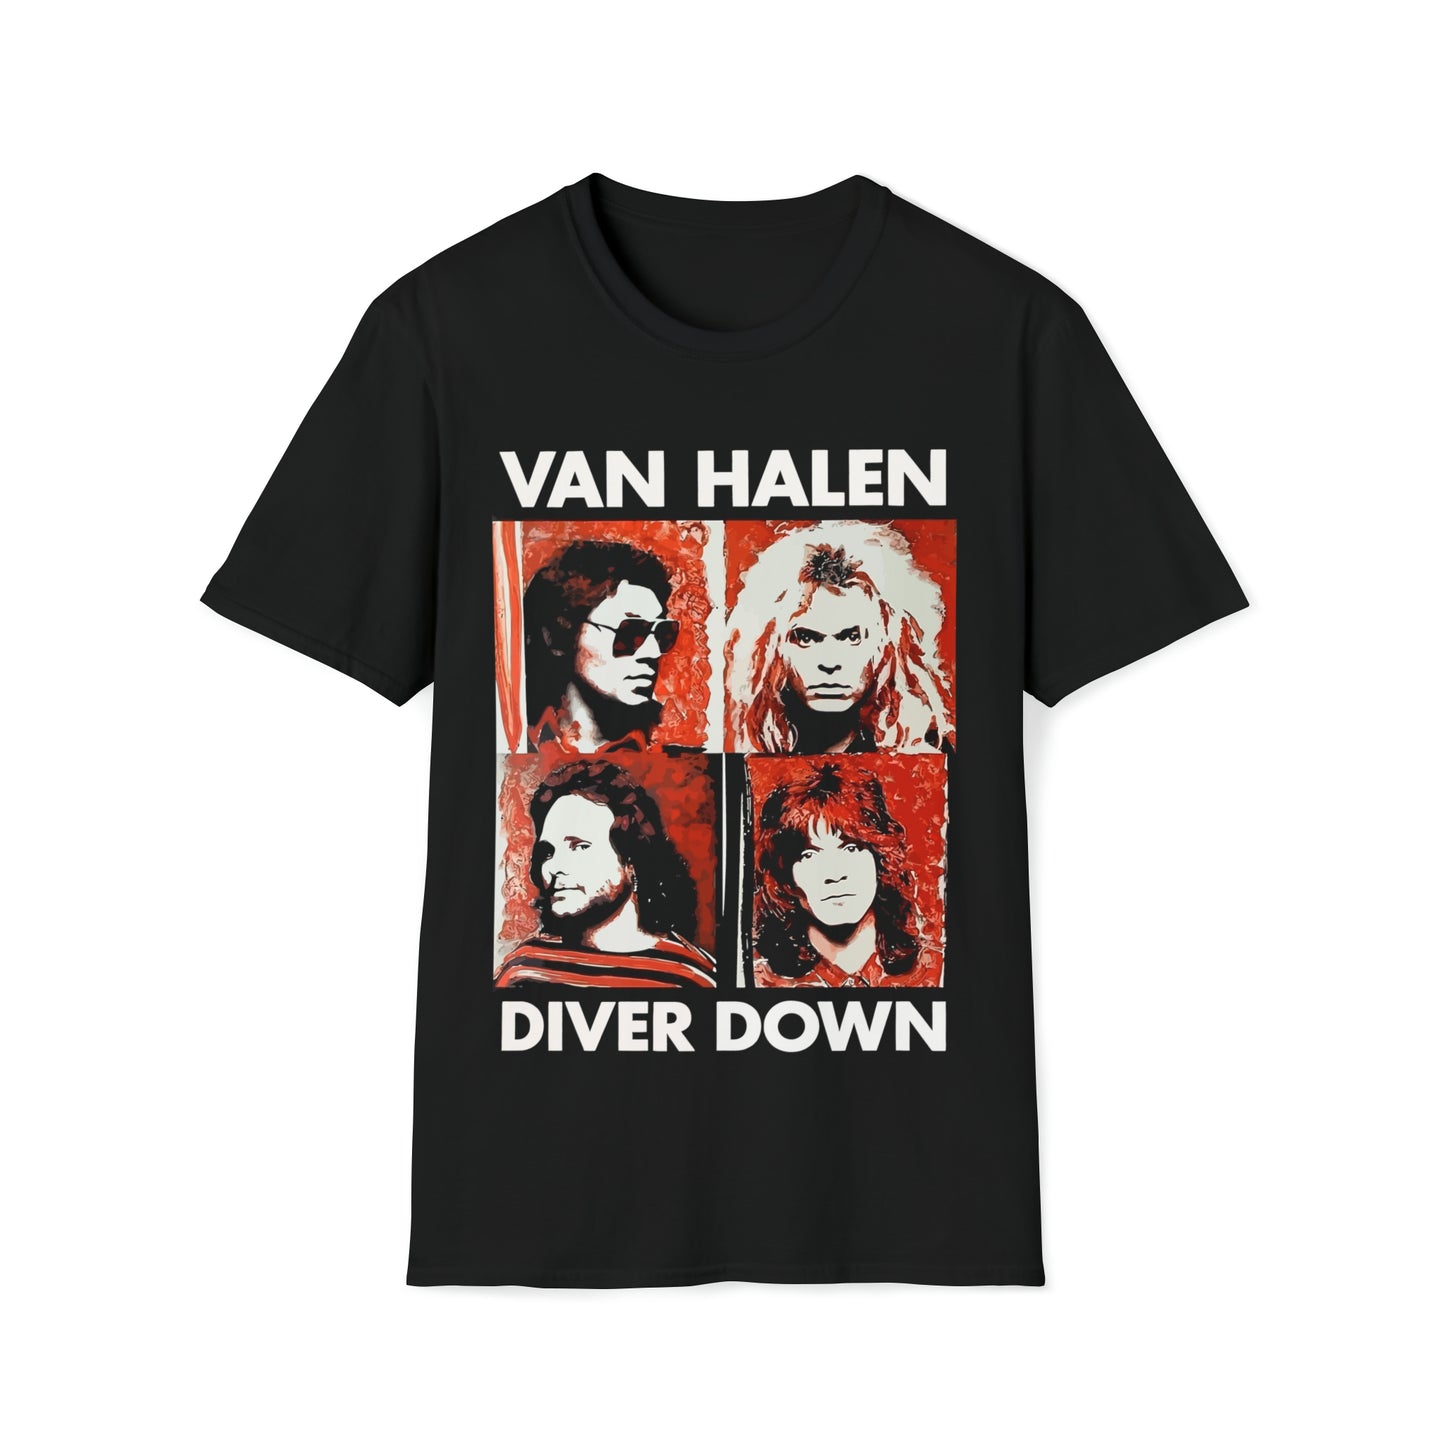 Van Halen 1982 Diver Down Promo Poster T-Shirt NWT Sz. S-3XL